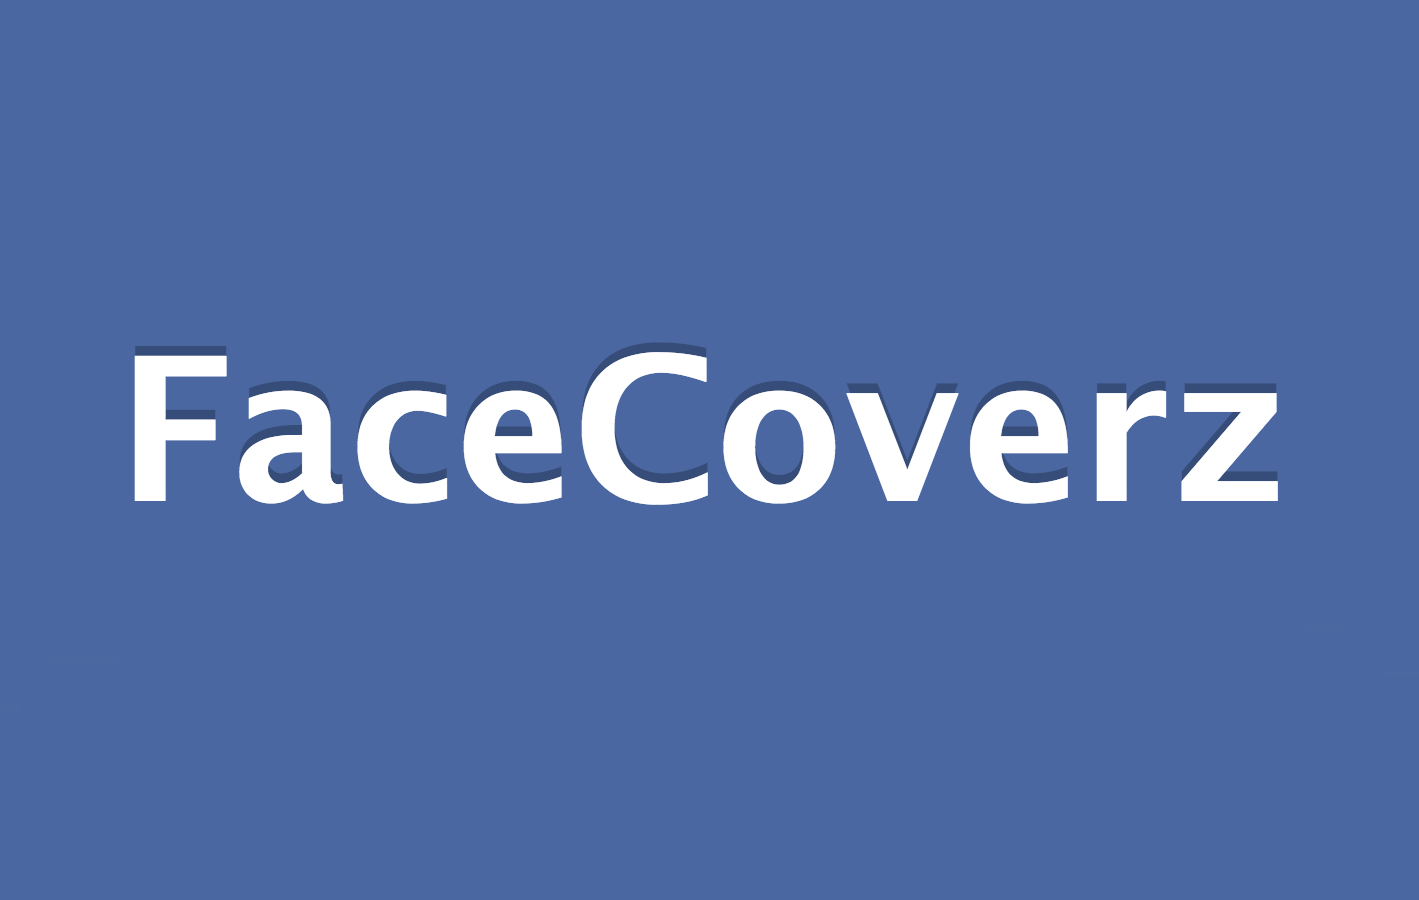 FaceCoverz logo